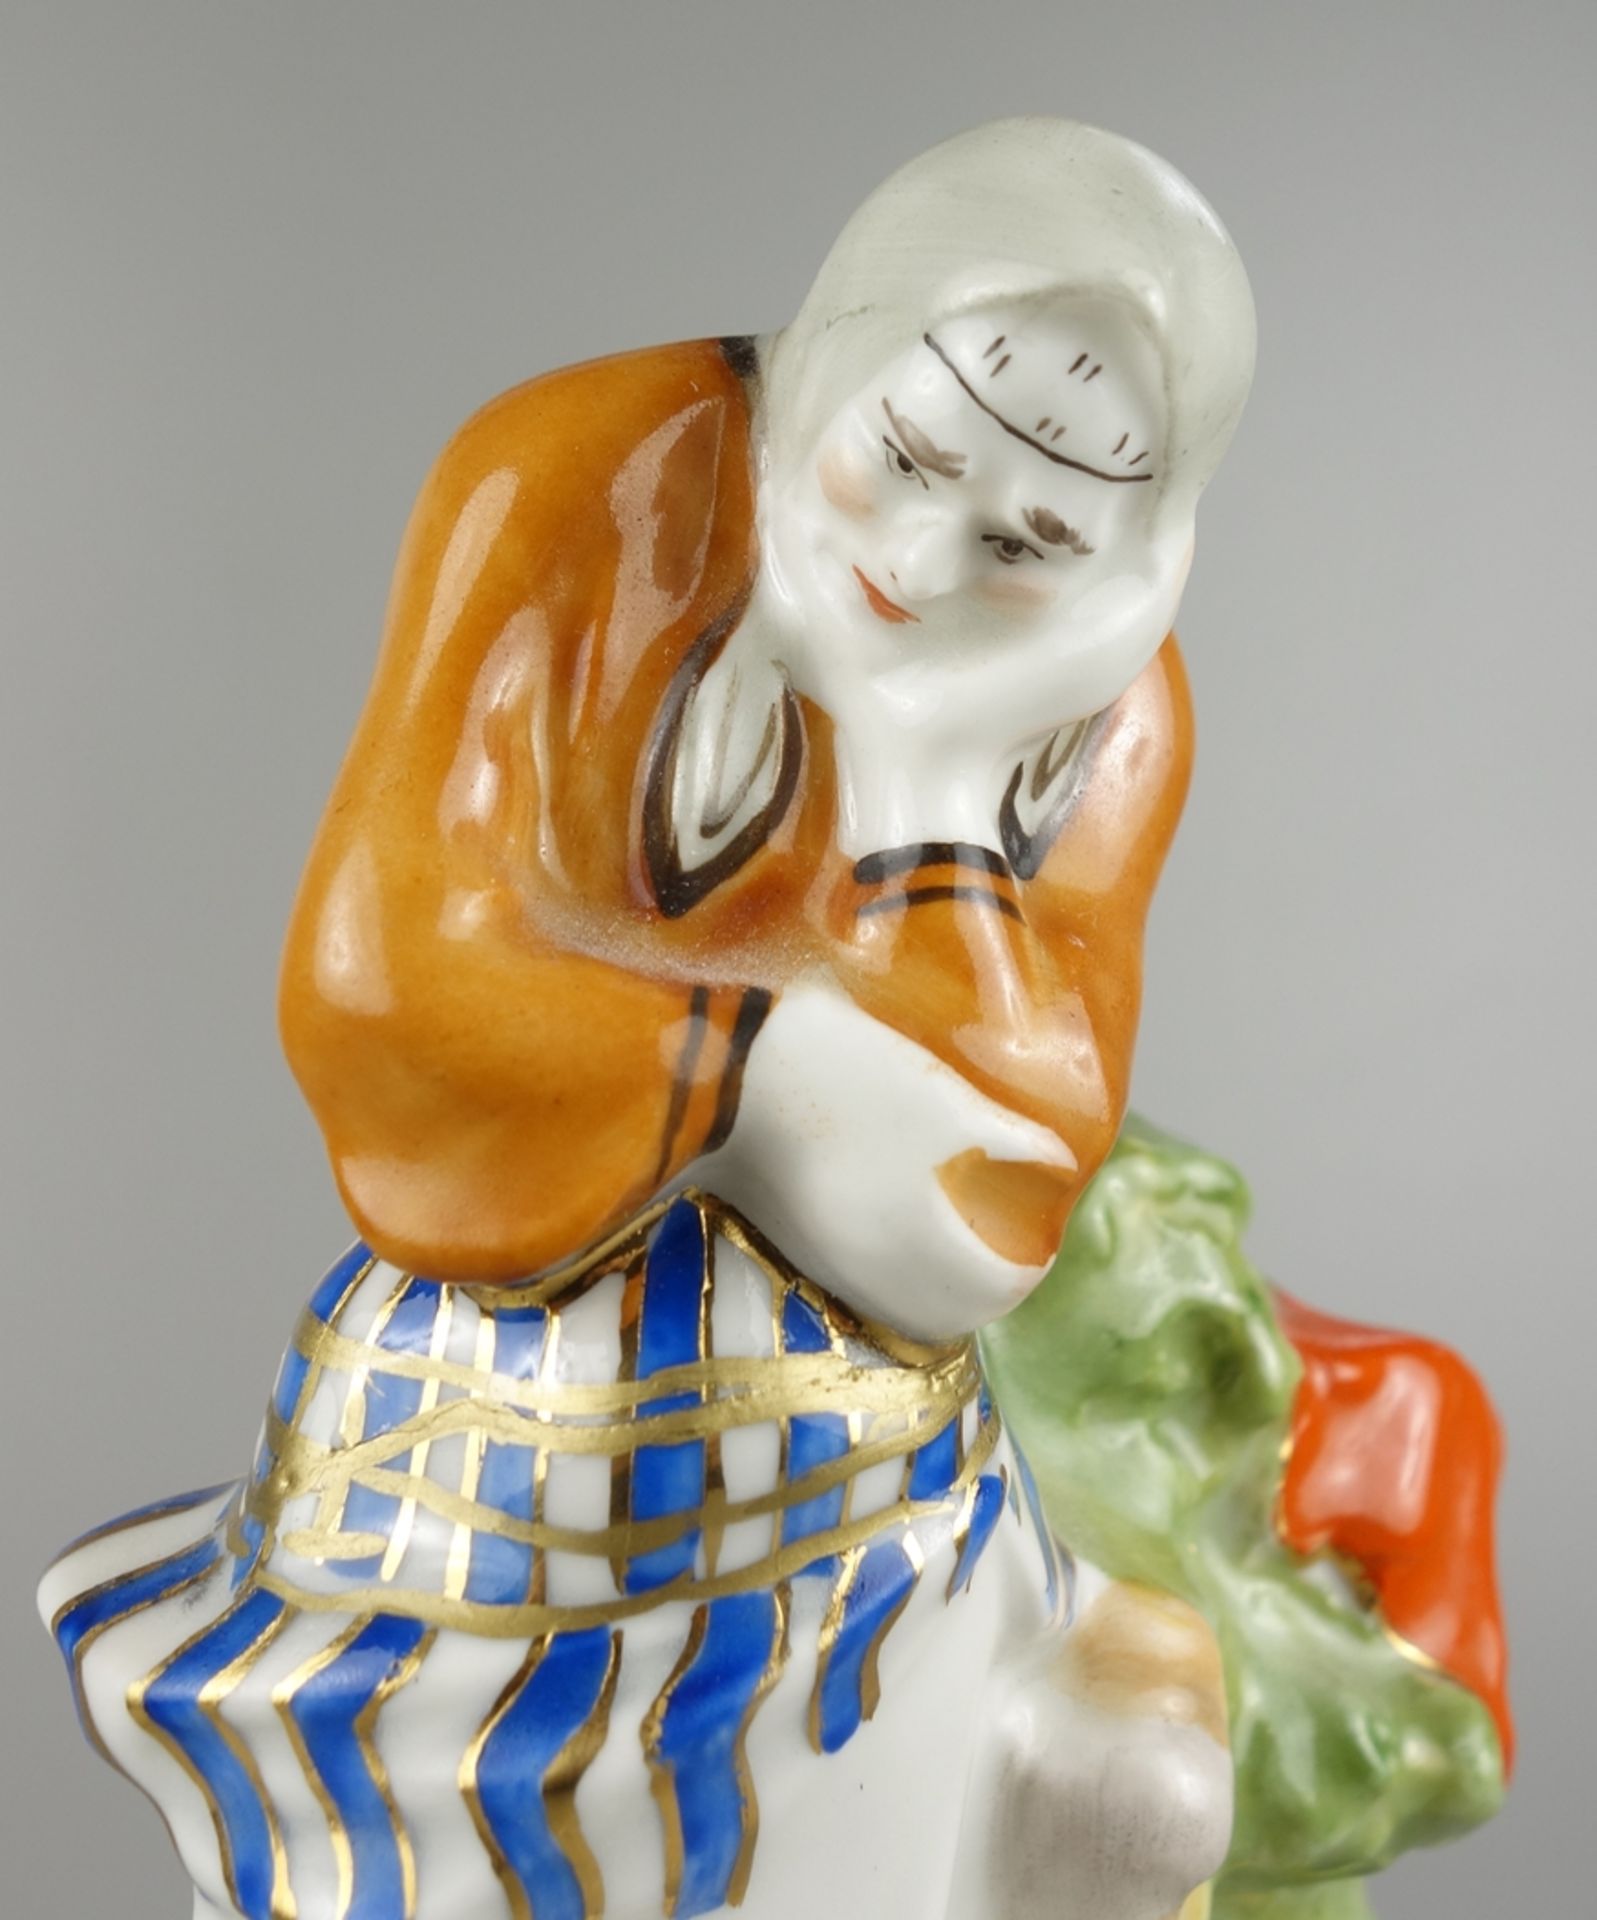 Figur "Alte Frau" aus Triptychon "Goldfisch", Verbilki, Moskau, Russland, 20.Jh. - Bild 2 aus 4